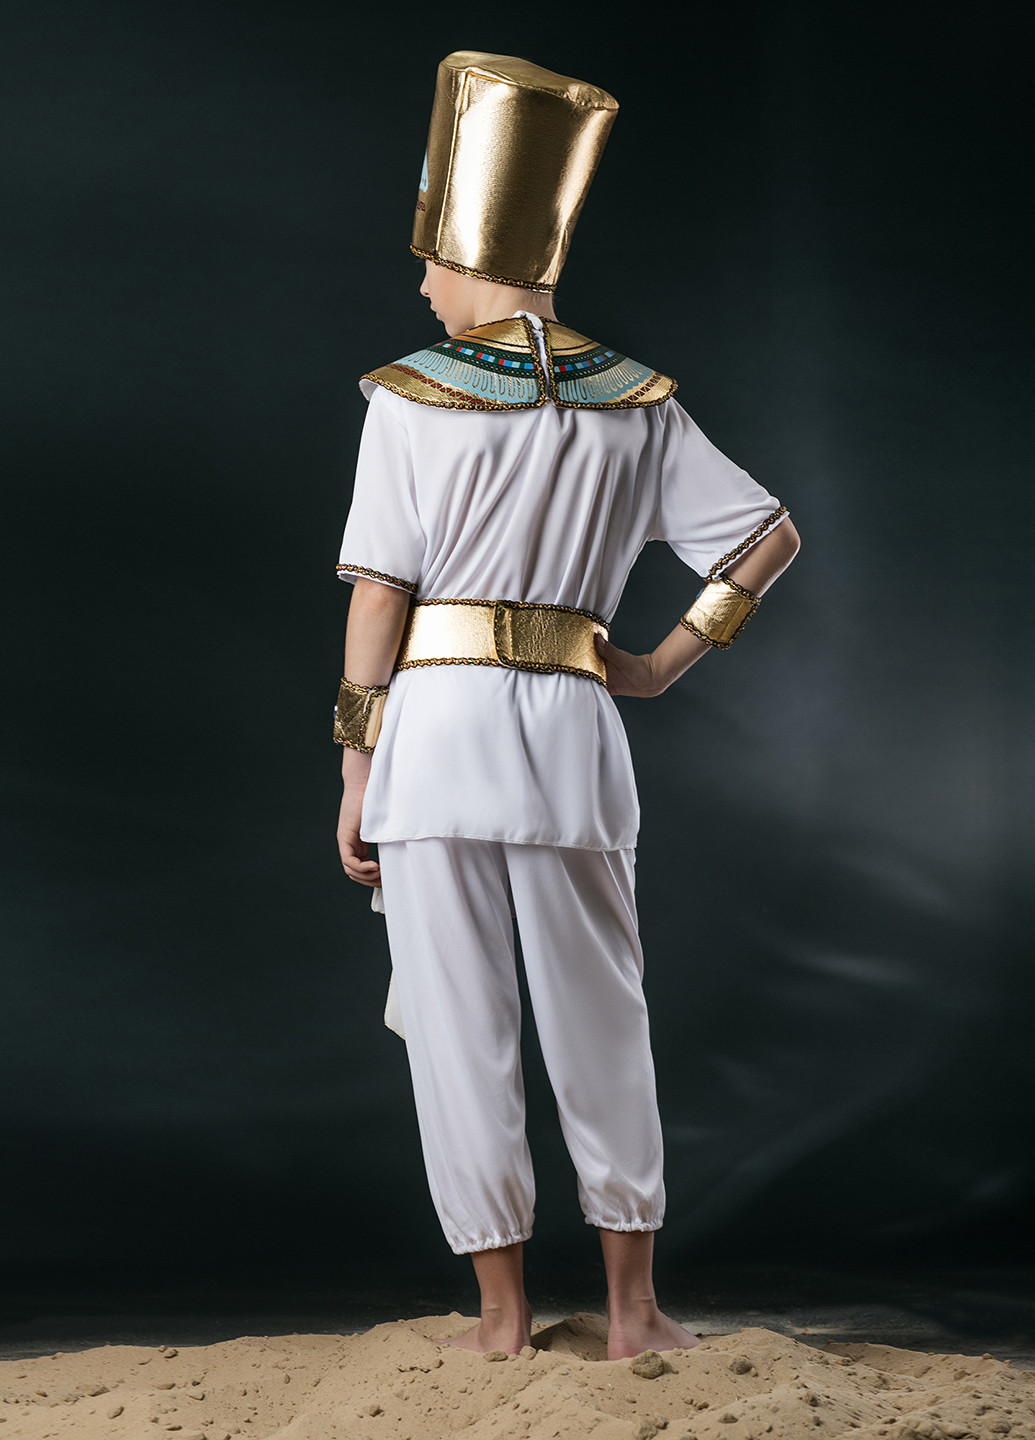 Маскарадный костюм Фараон La Mascarade (109391813)